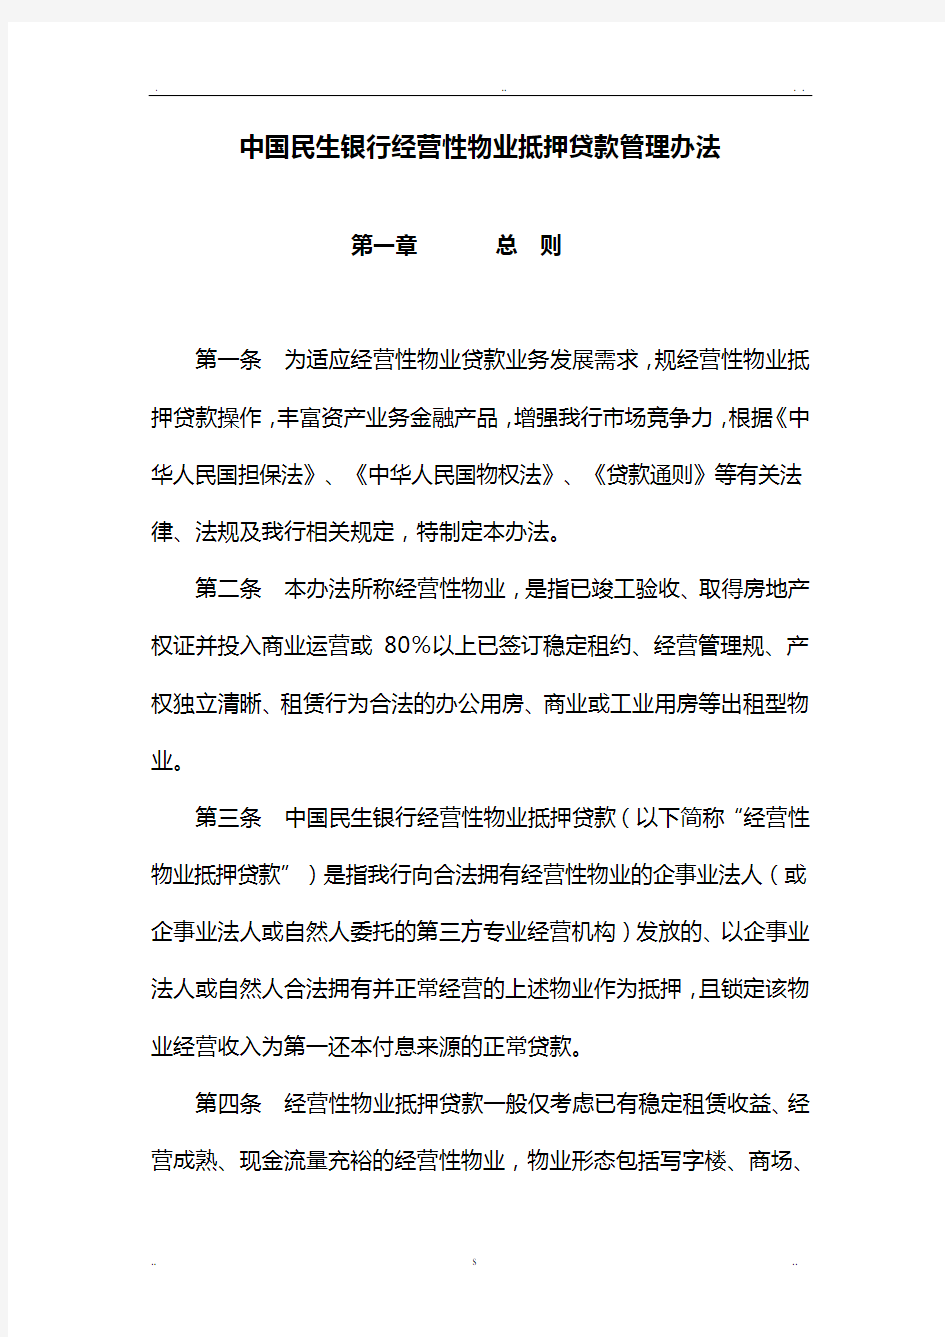 中国民生银行经营性物业抵押贷款管理办法